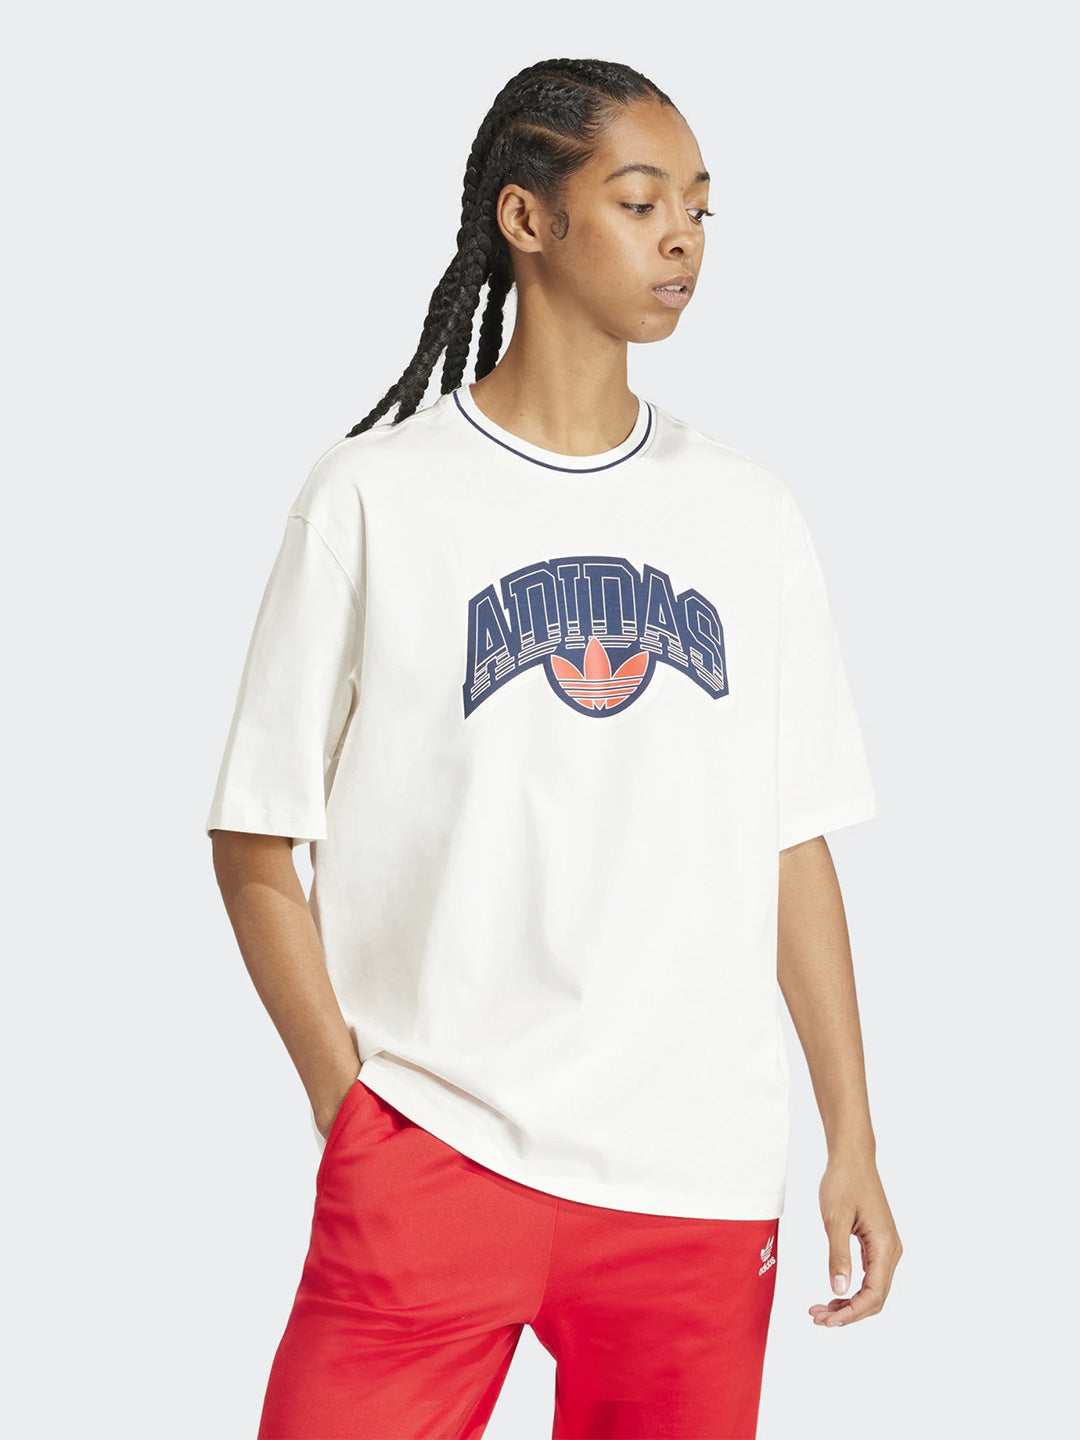 Adidas t-shirt panna con grafica logo grande